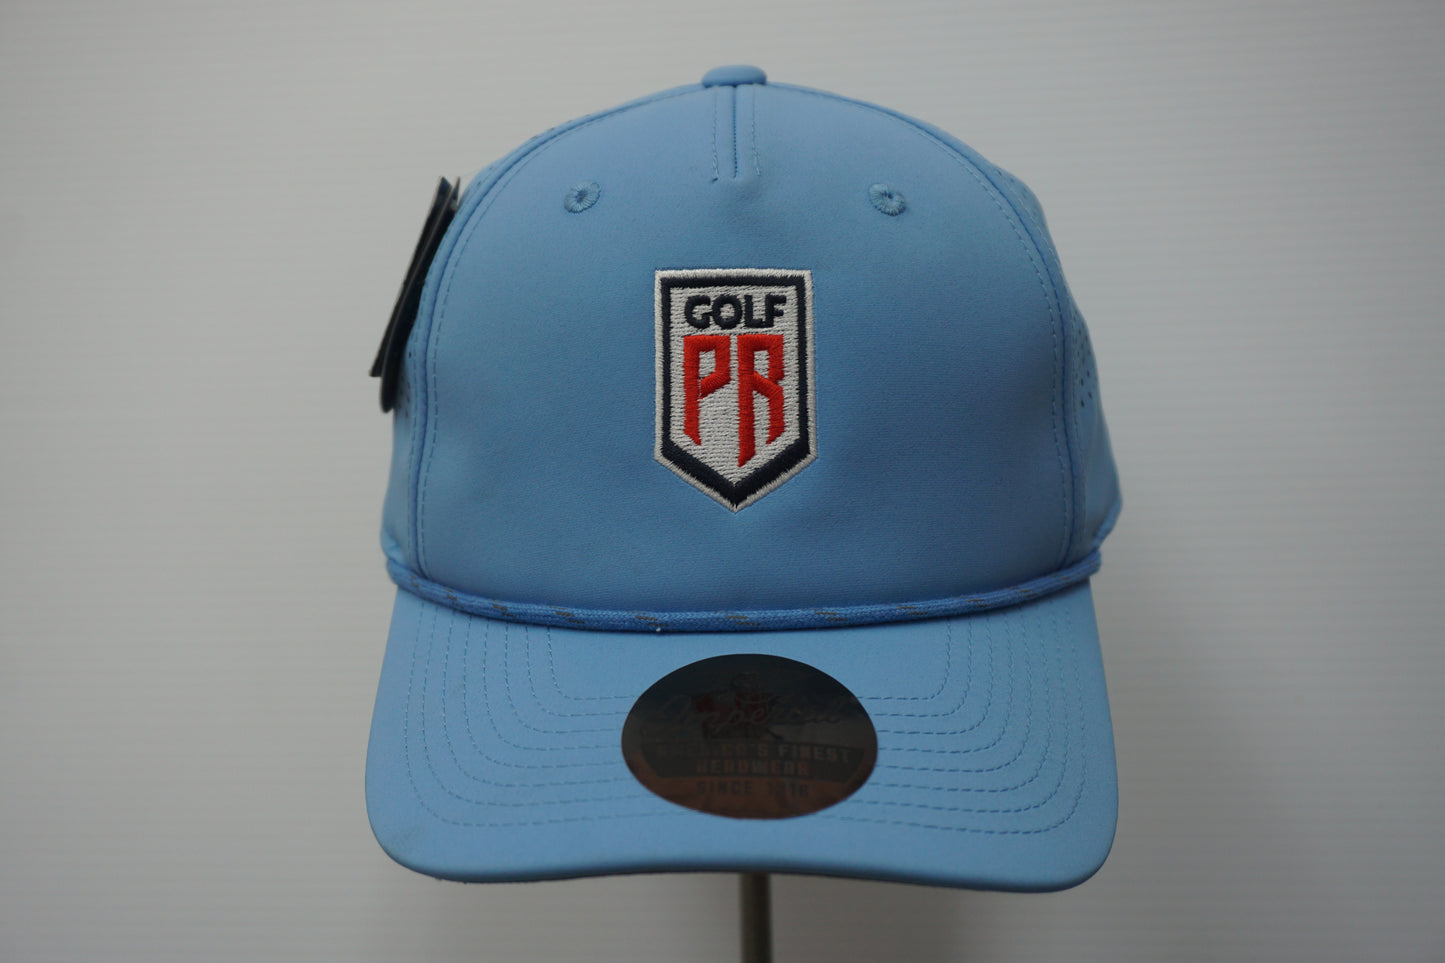 Golf PR Cap